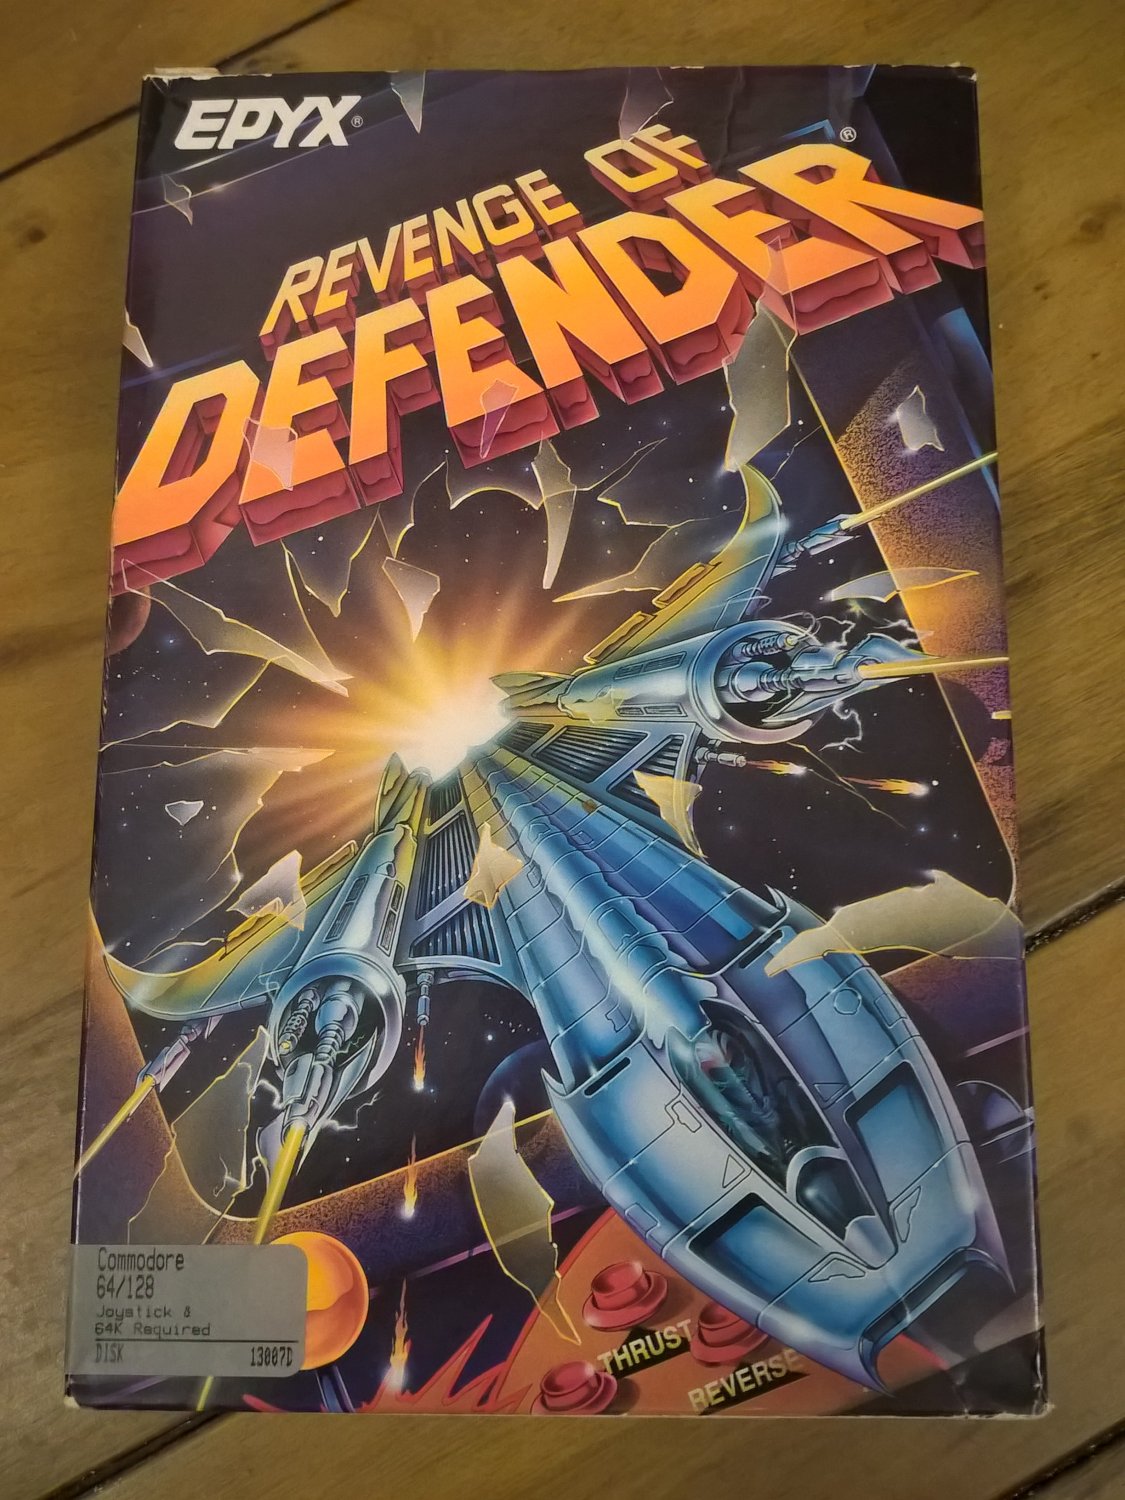 Revenge of Defender For Commodore 64/128, NEW OPEN BOX, EPYX